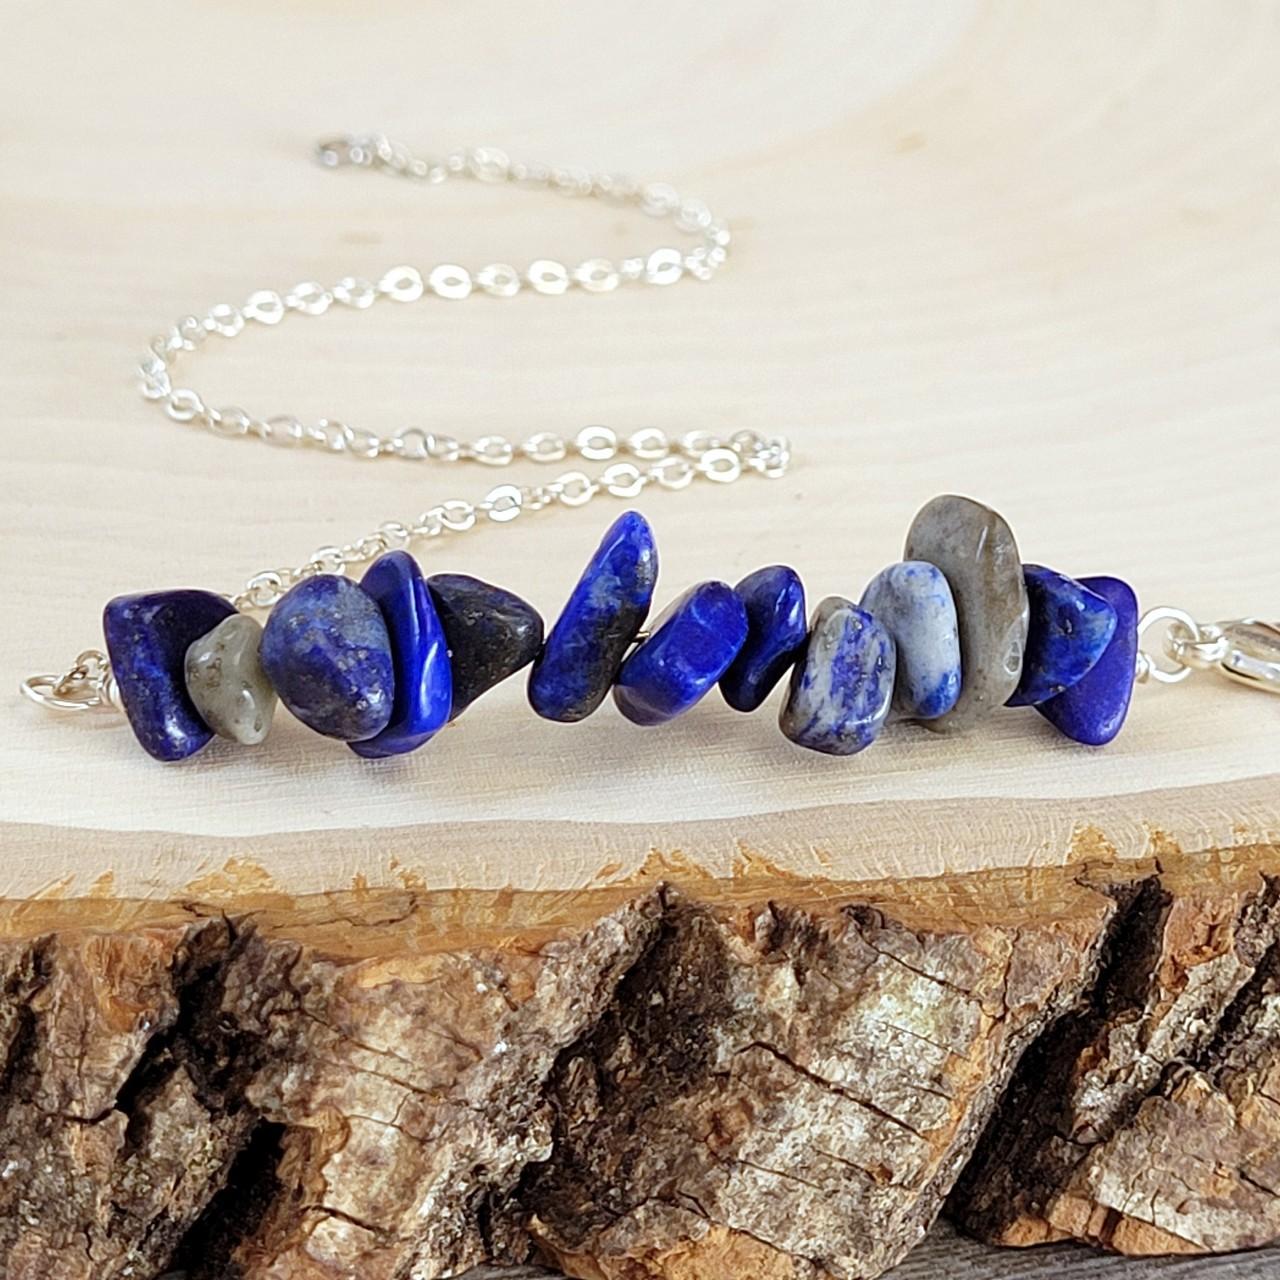 Product Image 2 - Gemstone beaded anklet.
Polished Lapis Lazuli